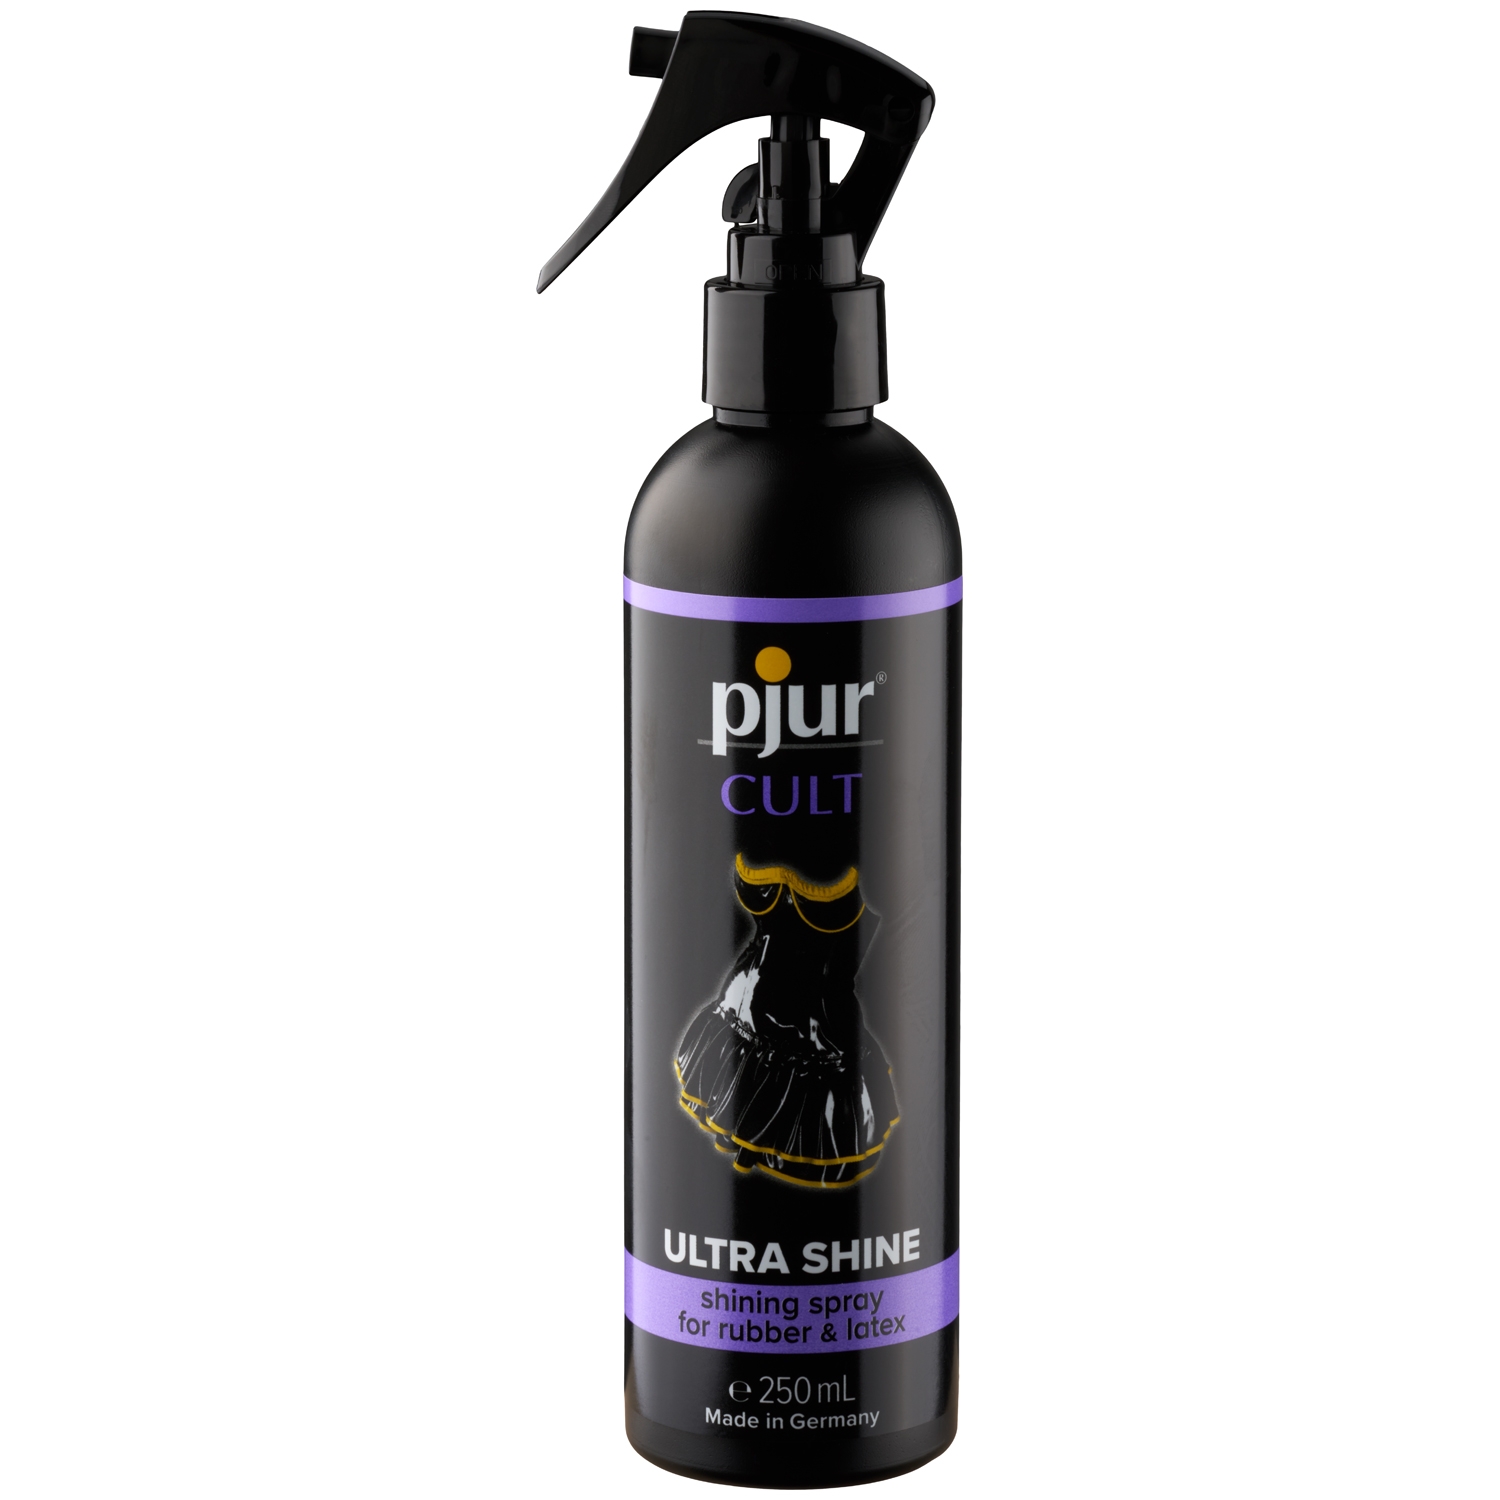 Pjur Cult Ultra Shining Latex Spray 250 ml - Klar